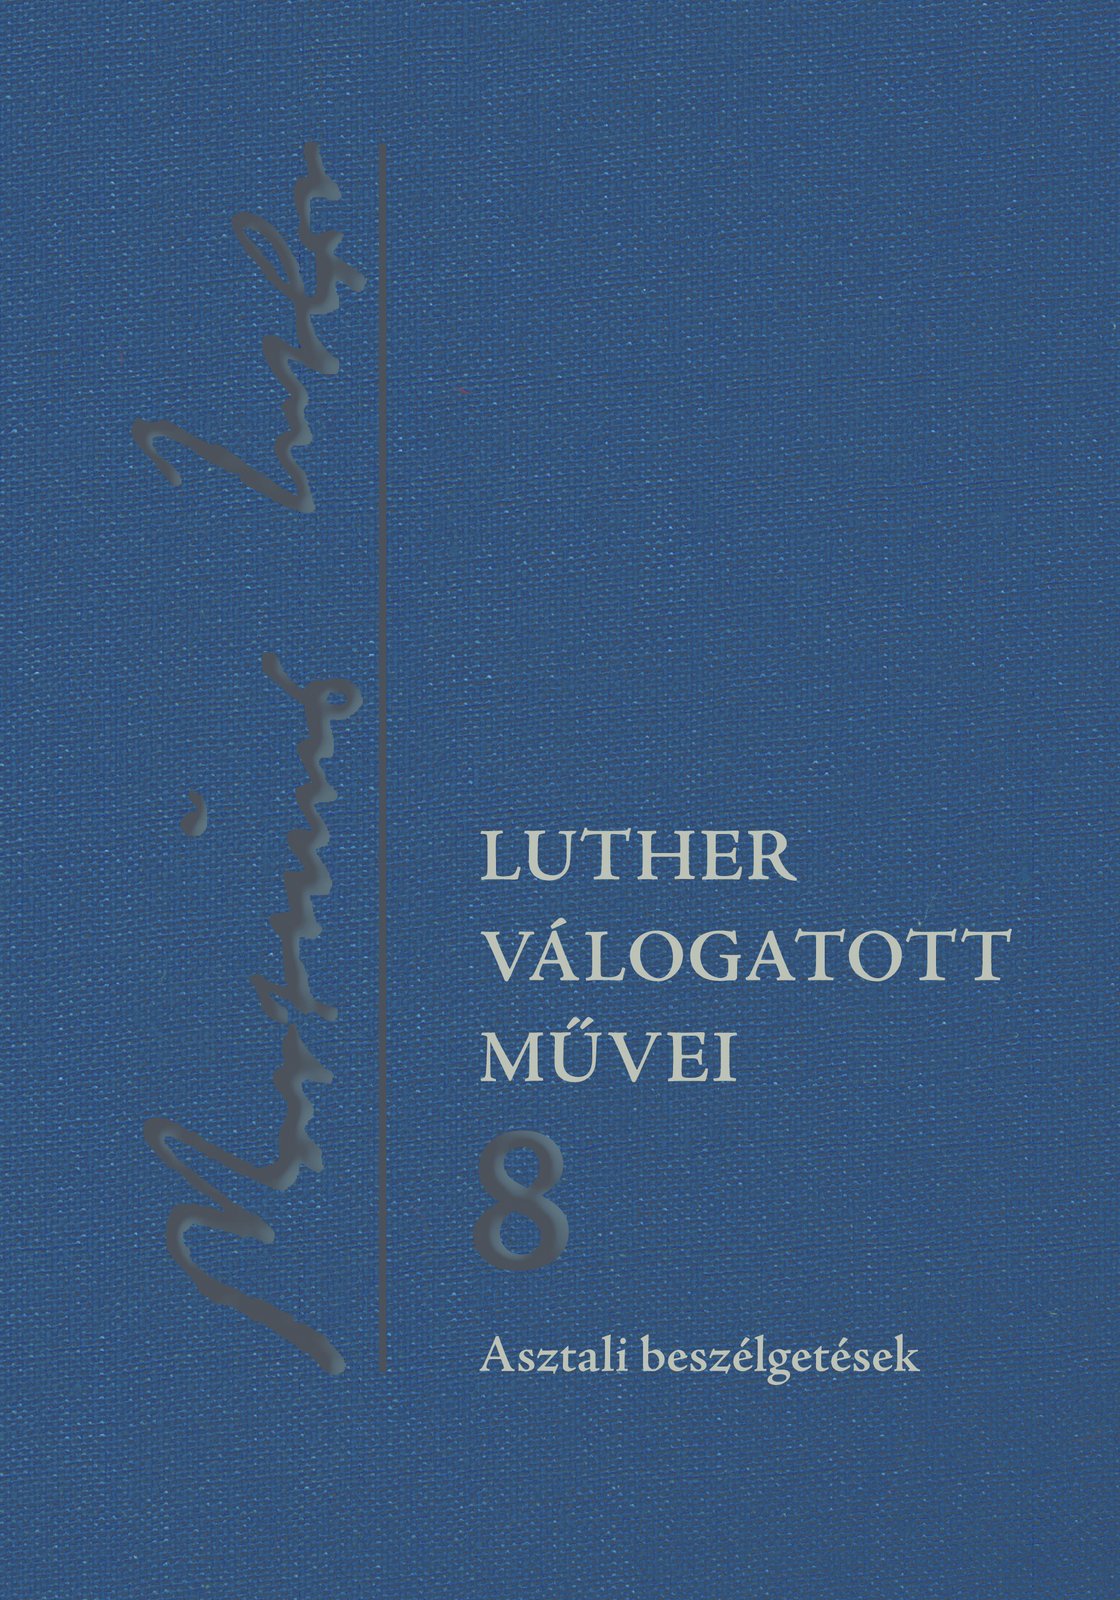 Luther Márton Asztali beszélgetések kötetét mutatták be